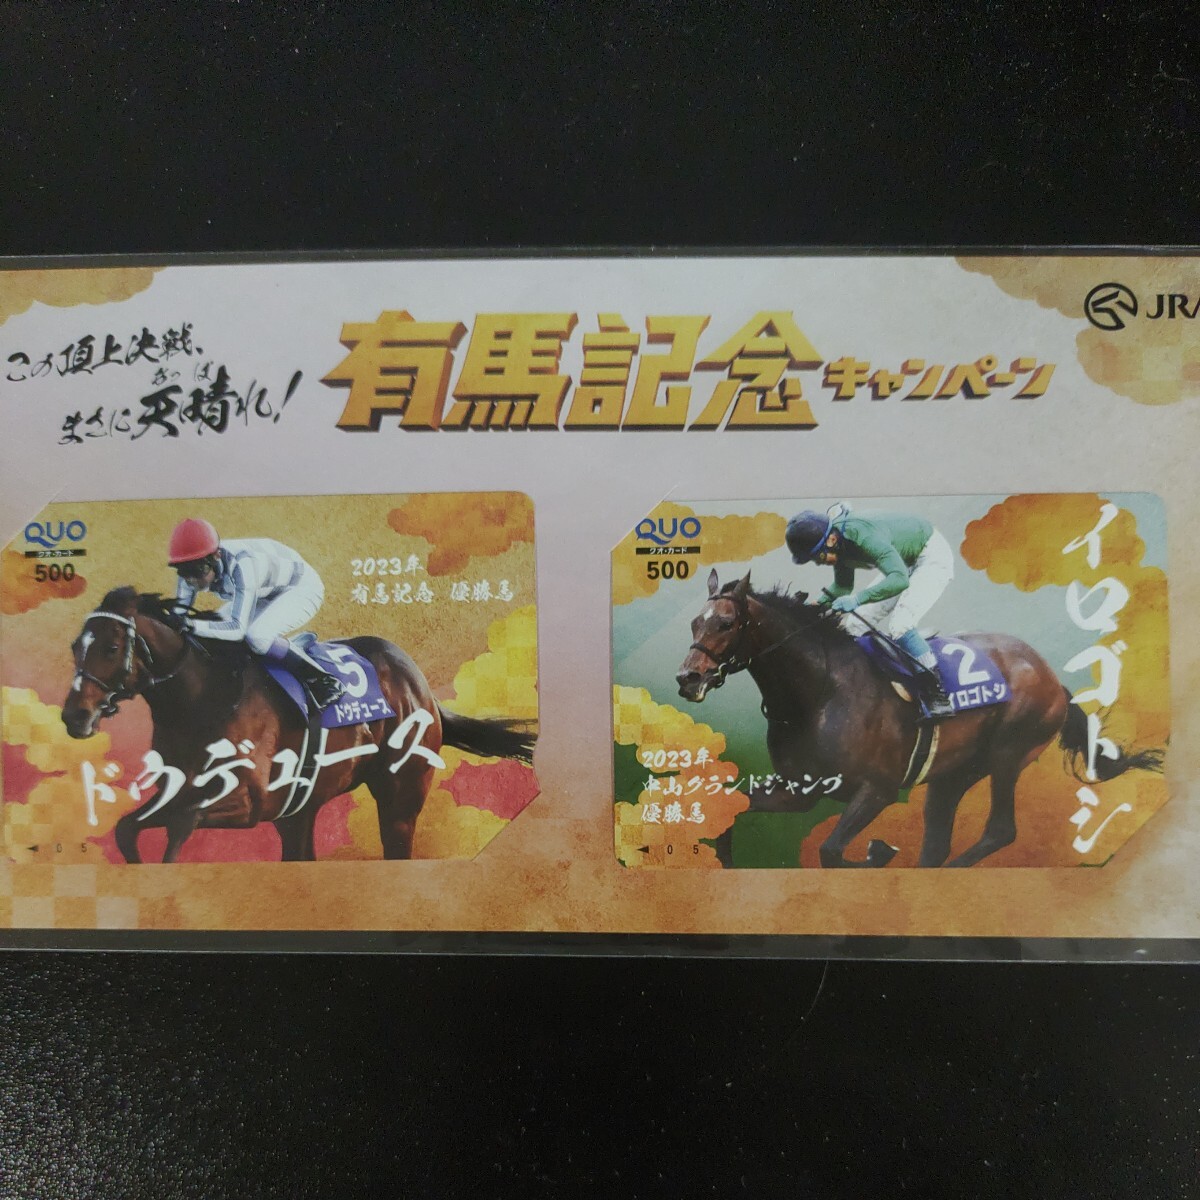 有馬記念キャンペーン当選品 ドウデュース イロゴトシ クオカード 500円分2枚 JRAの画像1